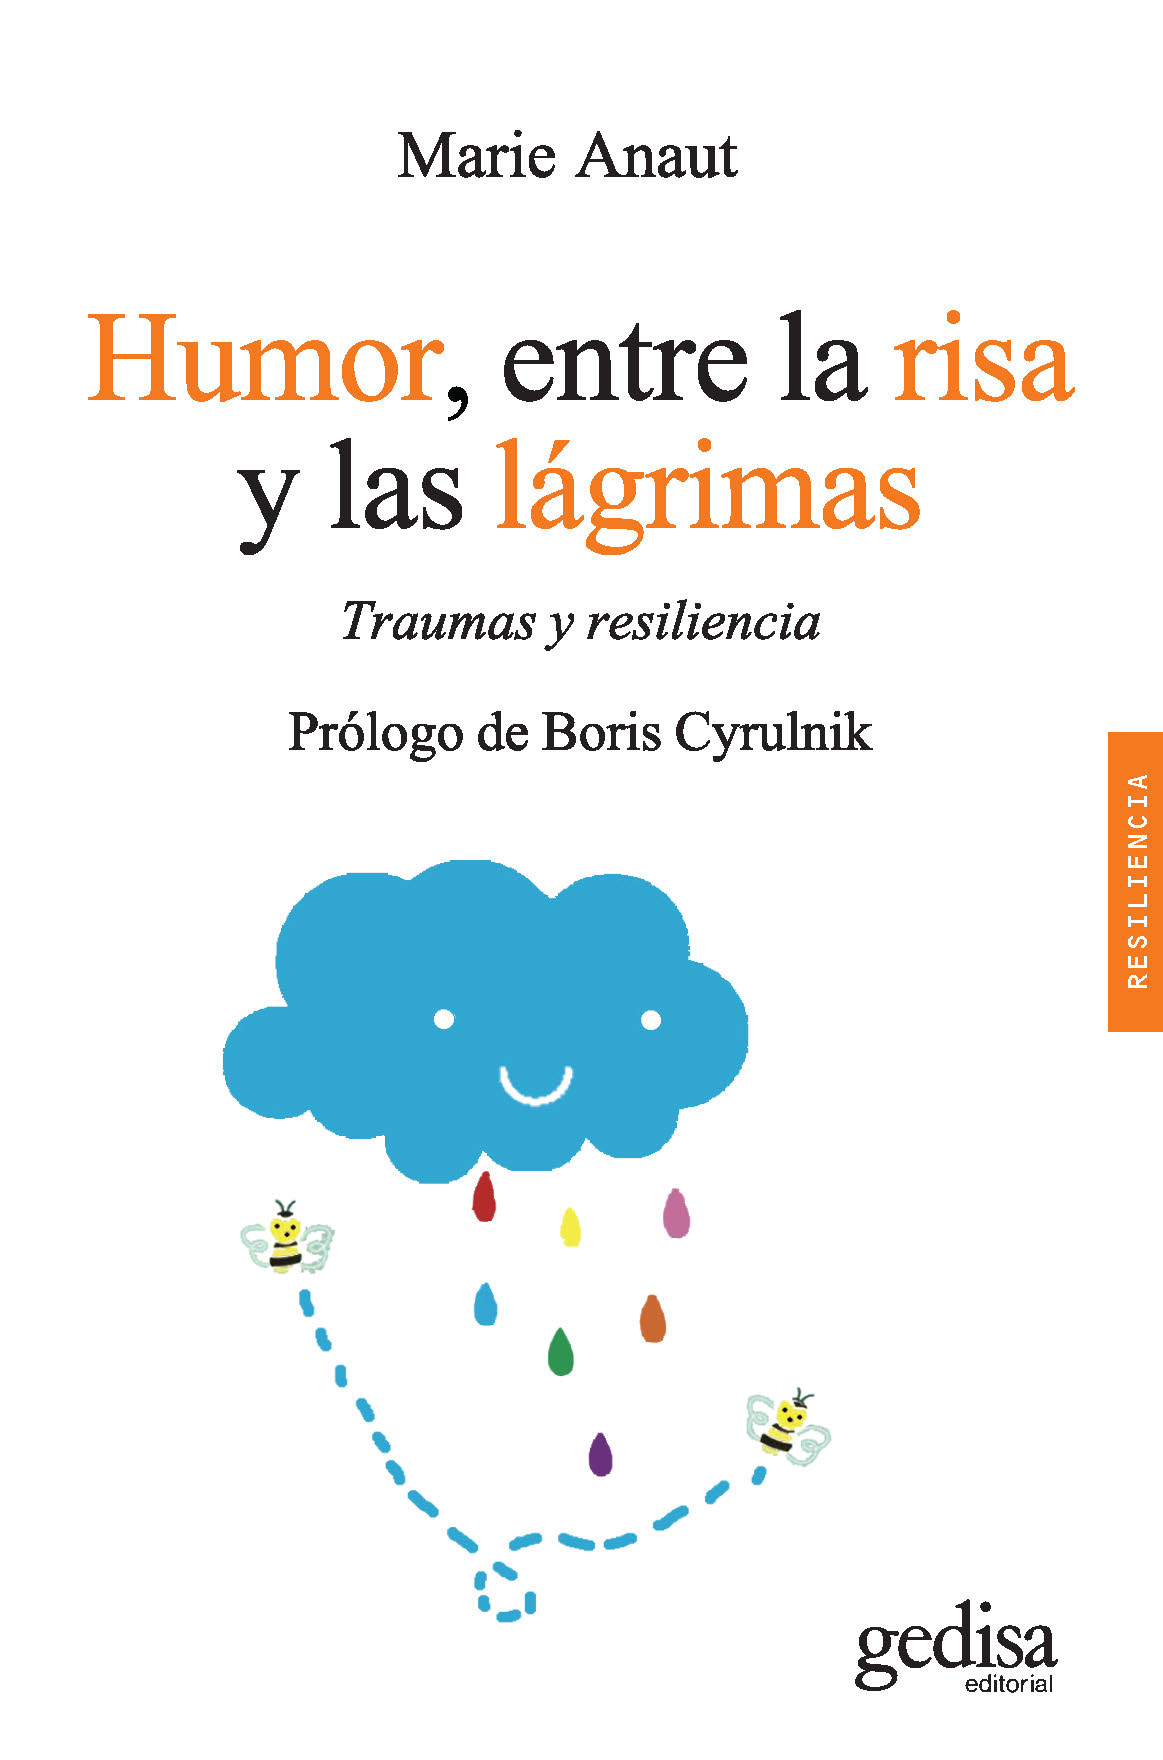 Marie Anaut Humor entre la risa y las lágrimas Colección Psicología - photo 1